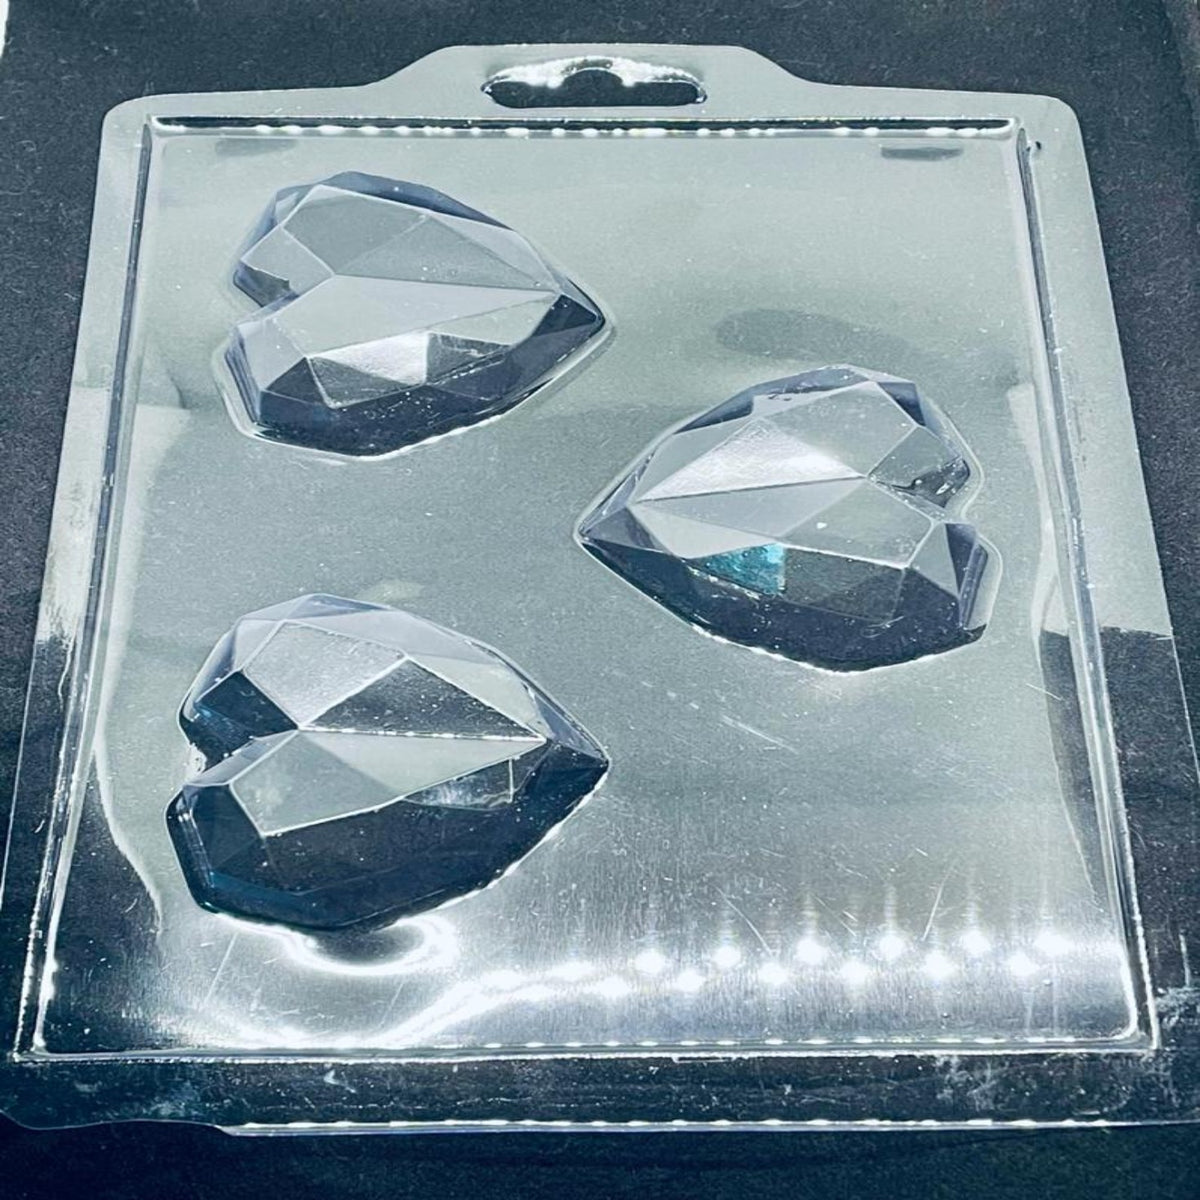 Molde silicona corazón diamante x 6 cavidades